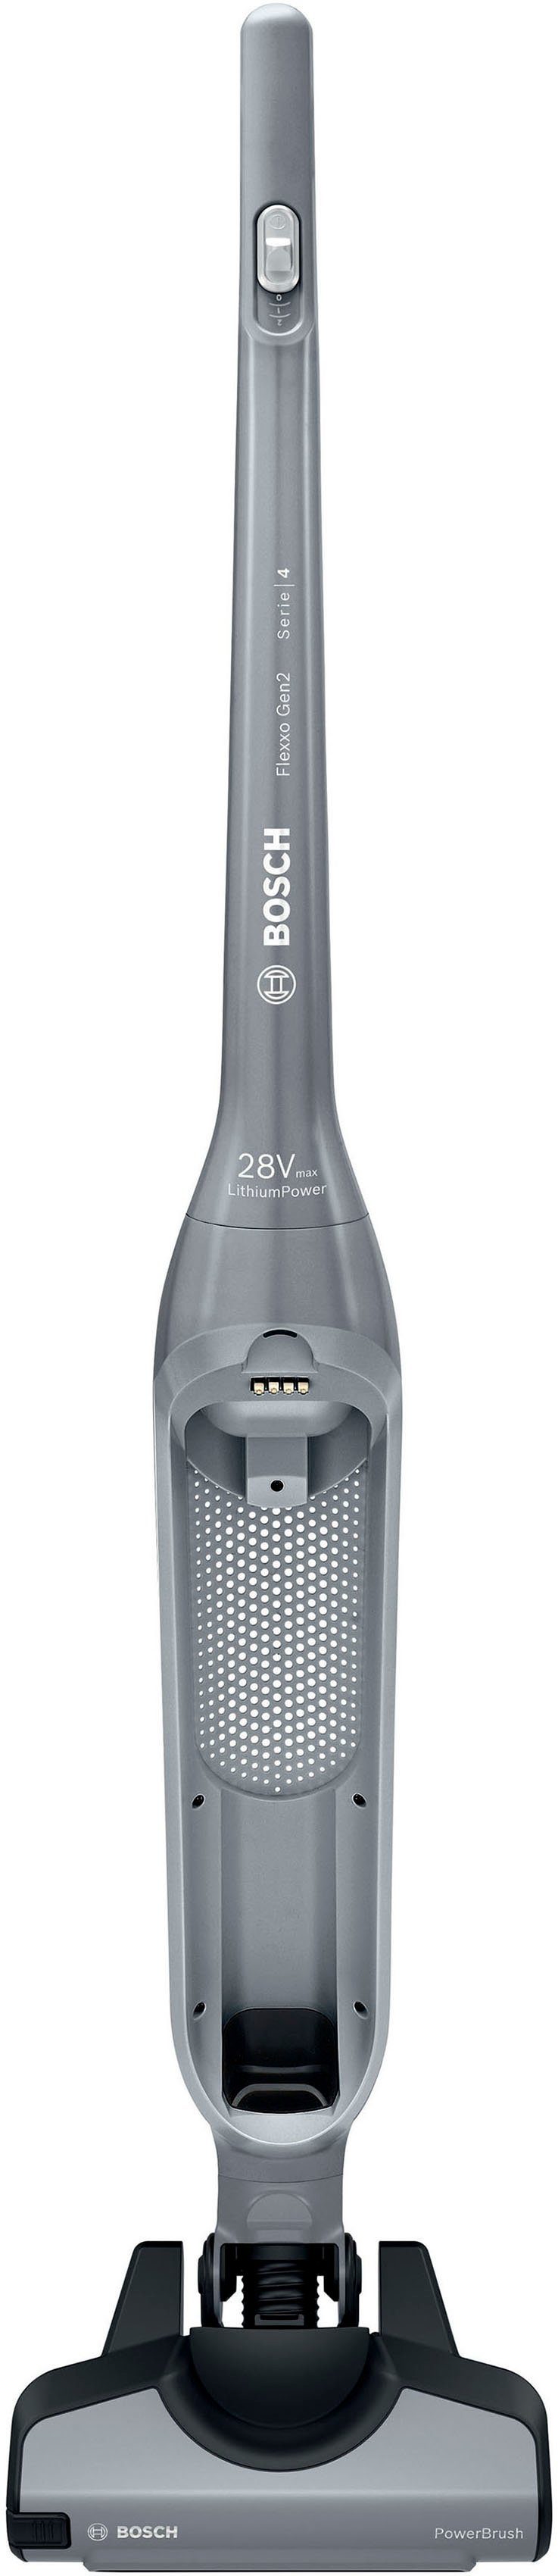 BOSCH Akku-Hand-und Stielstaubsauger Flexxo Gen 2 Serie 4 BBH3K2801, beutellos, 28 V, Power Düse mit LED, integriertes Zubehör, silber | Stielstaubsauger